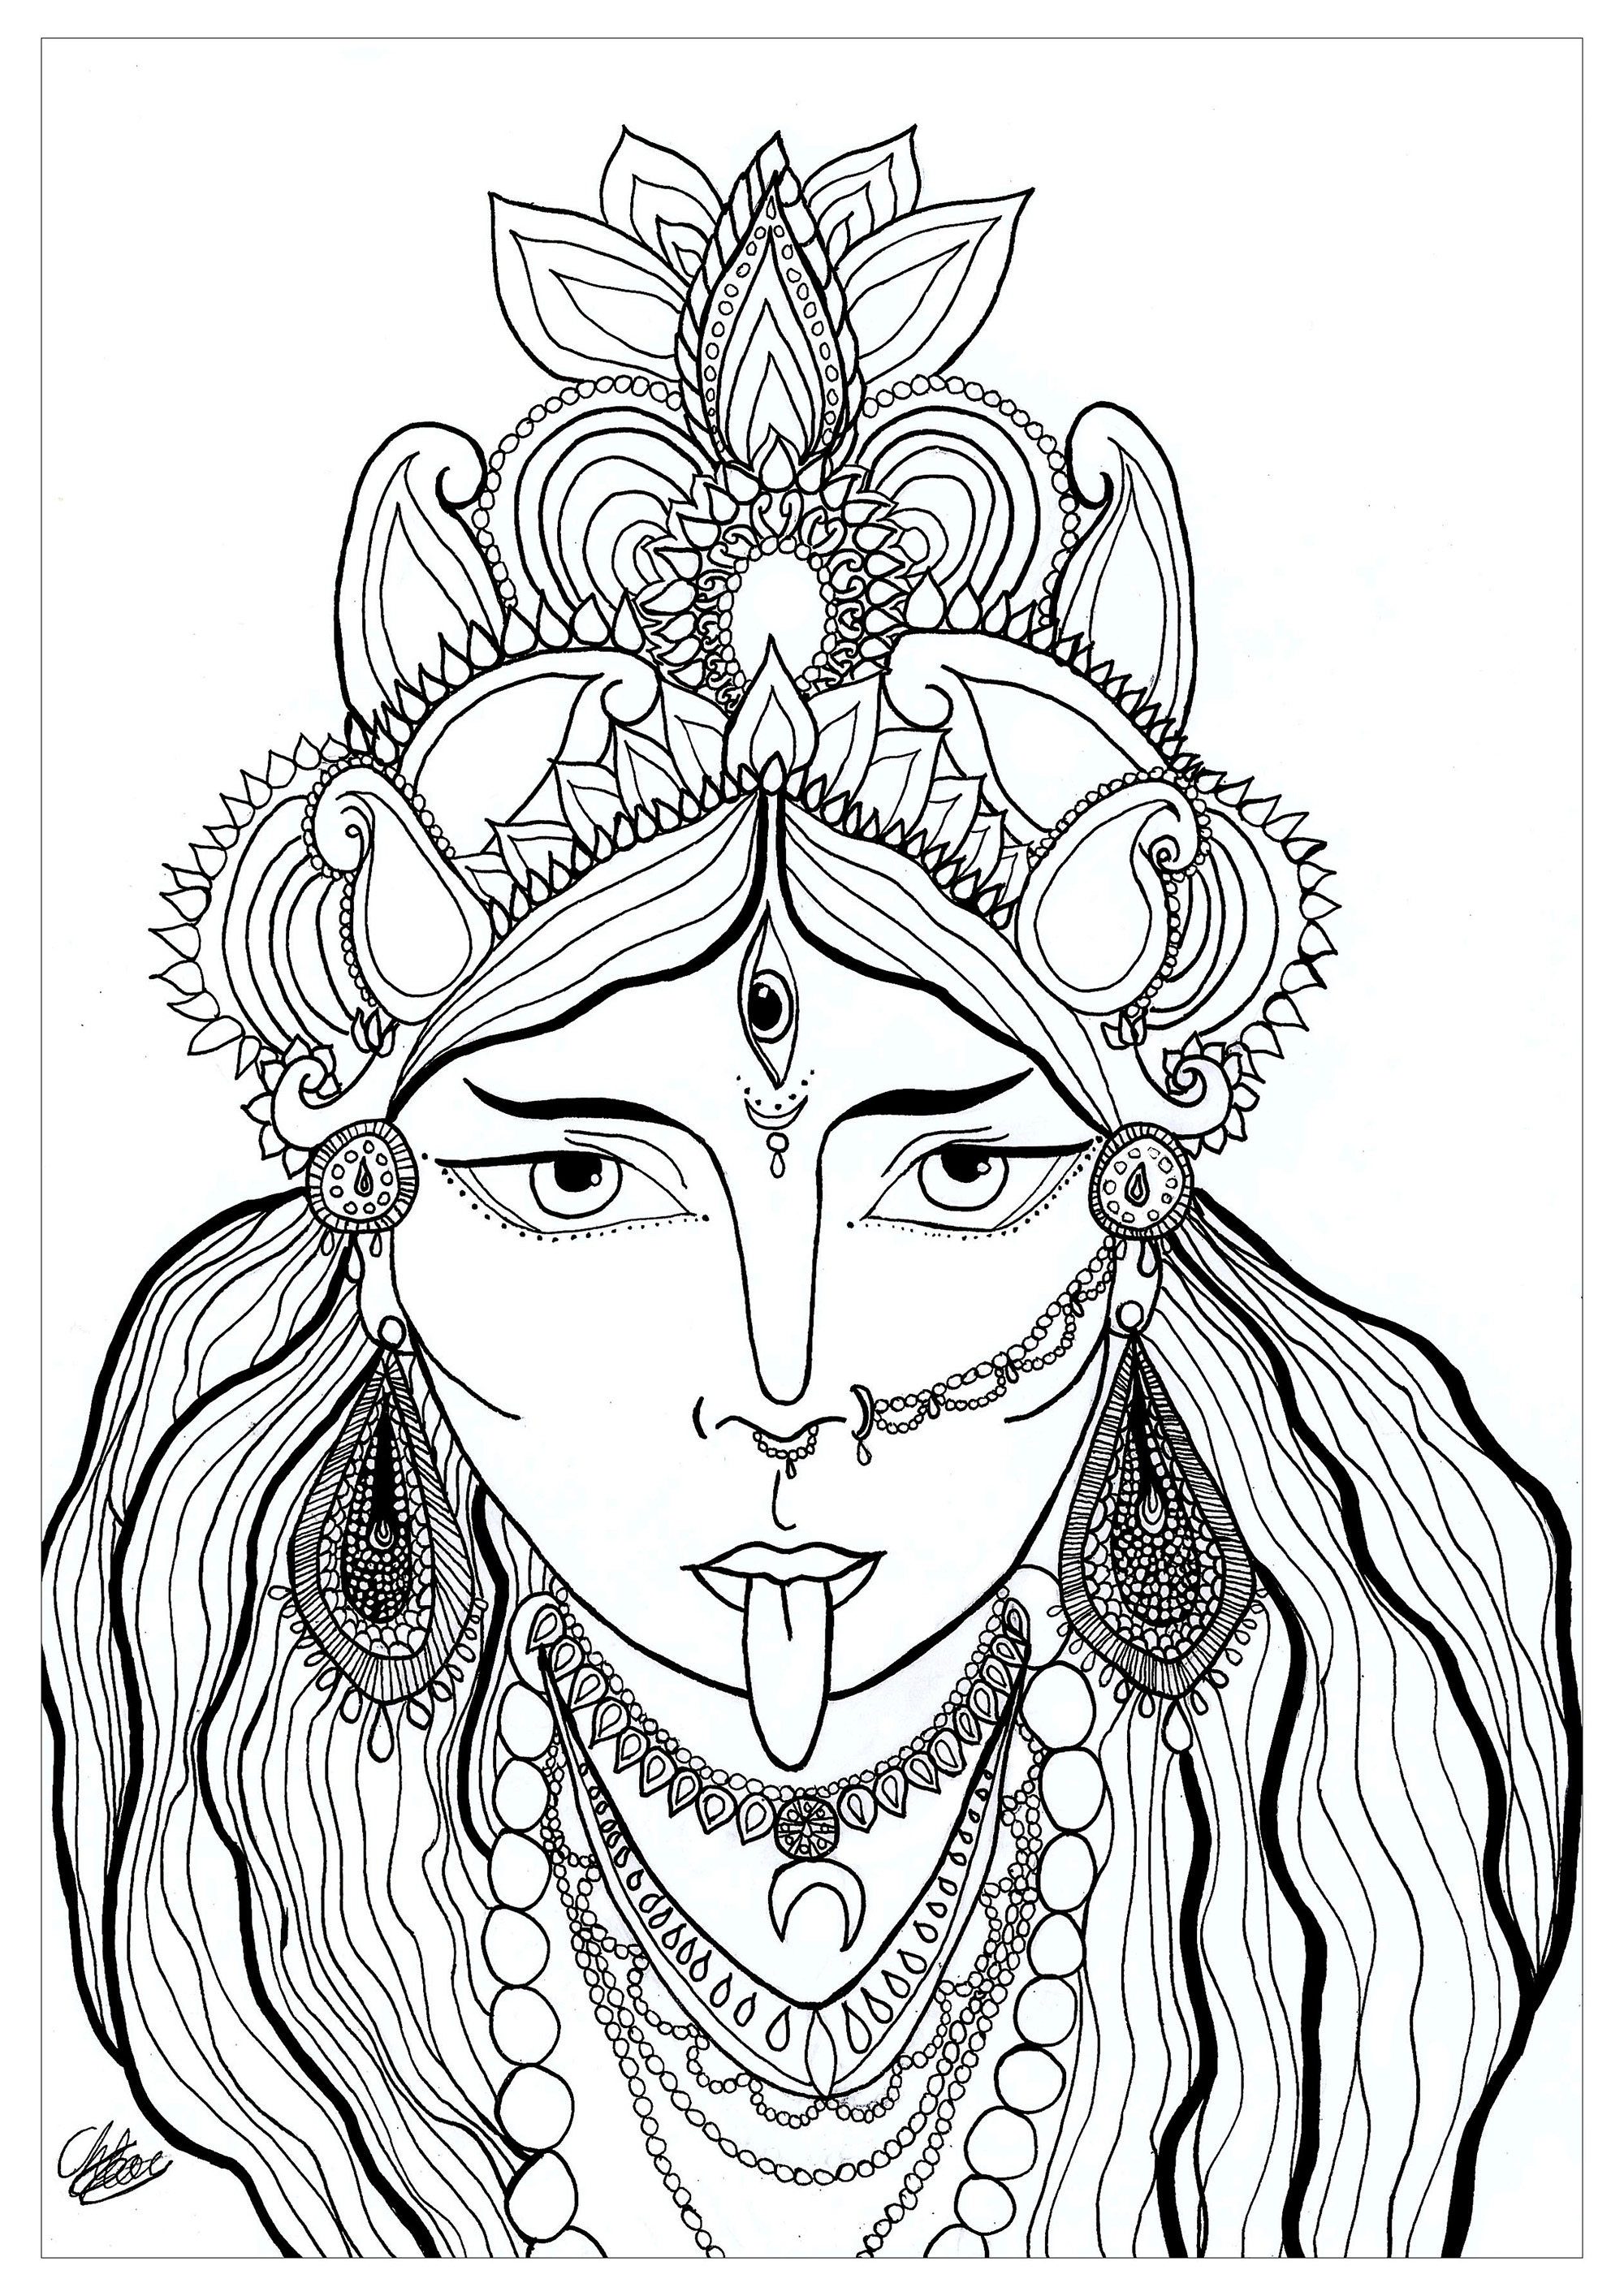 Página para colorear de la diosa Kali. Kali es una diosa hindú venerada como manifestación de Shakti, el poder creativo femenino. Representada con un aspecto aterrador, simboliza el tiempo, la destrucción del mal y la transformación, y desempeña un papel fundamental en la tradición hindú.